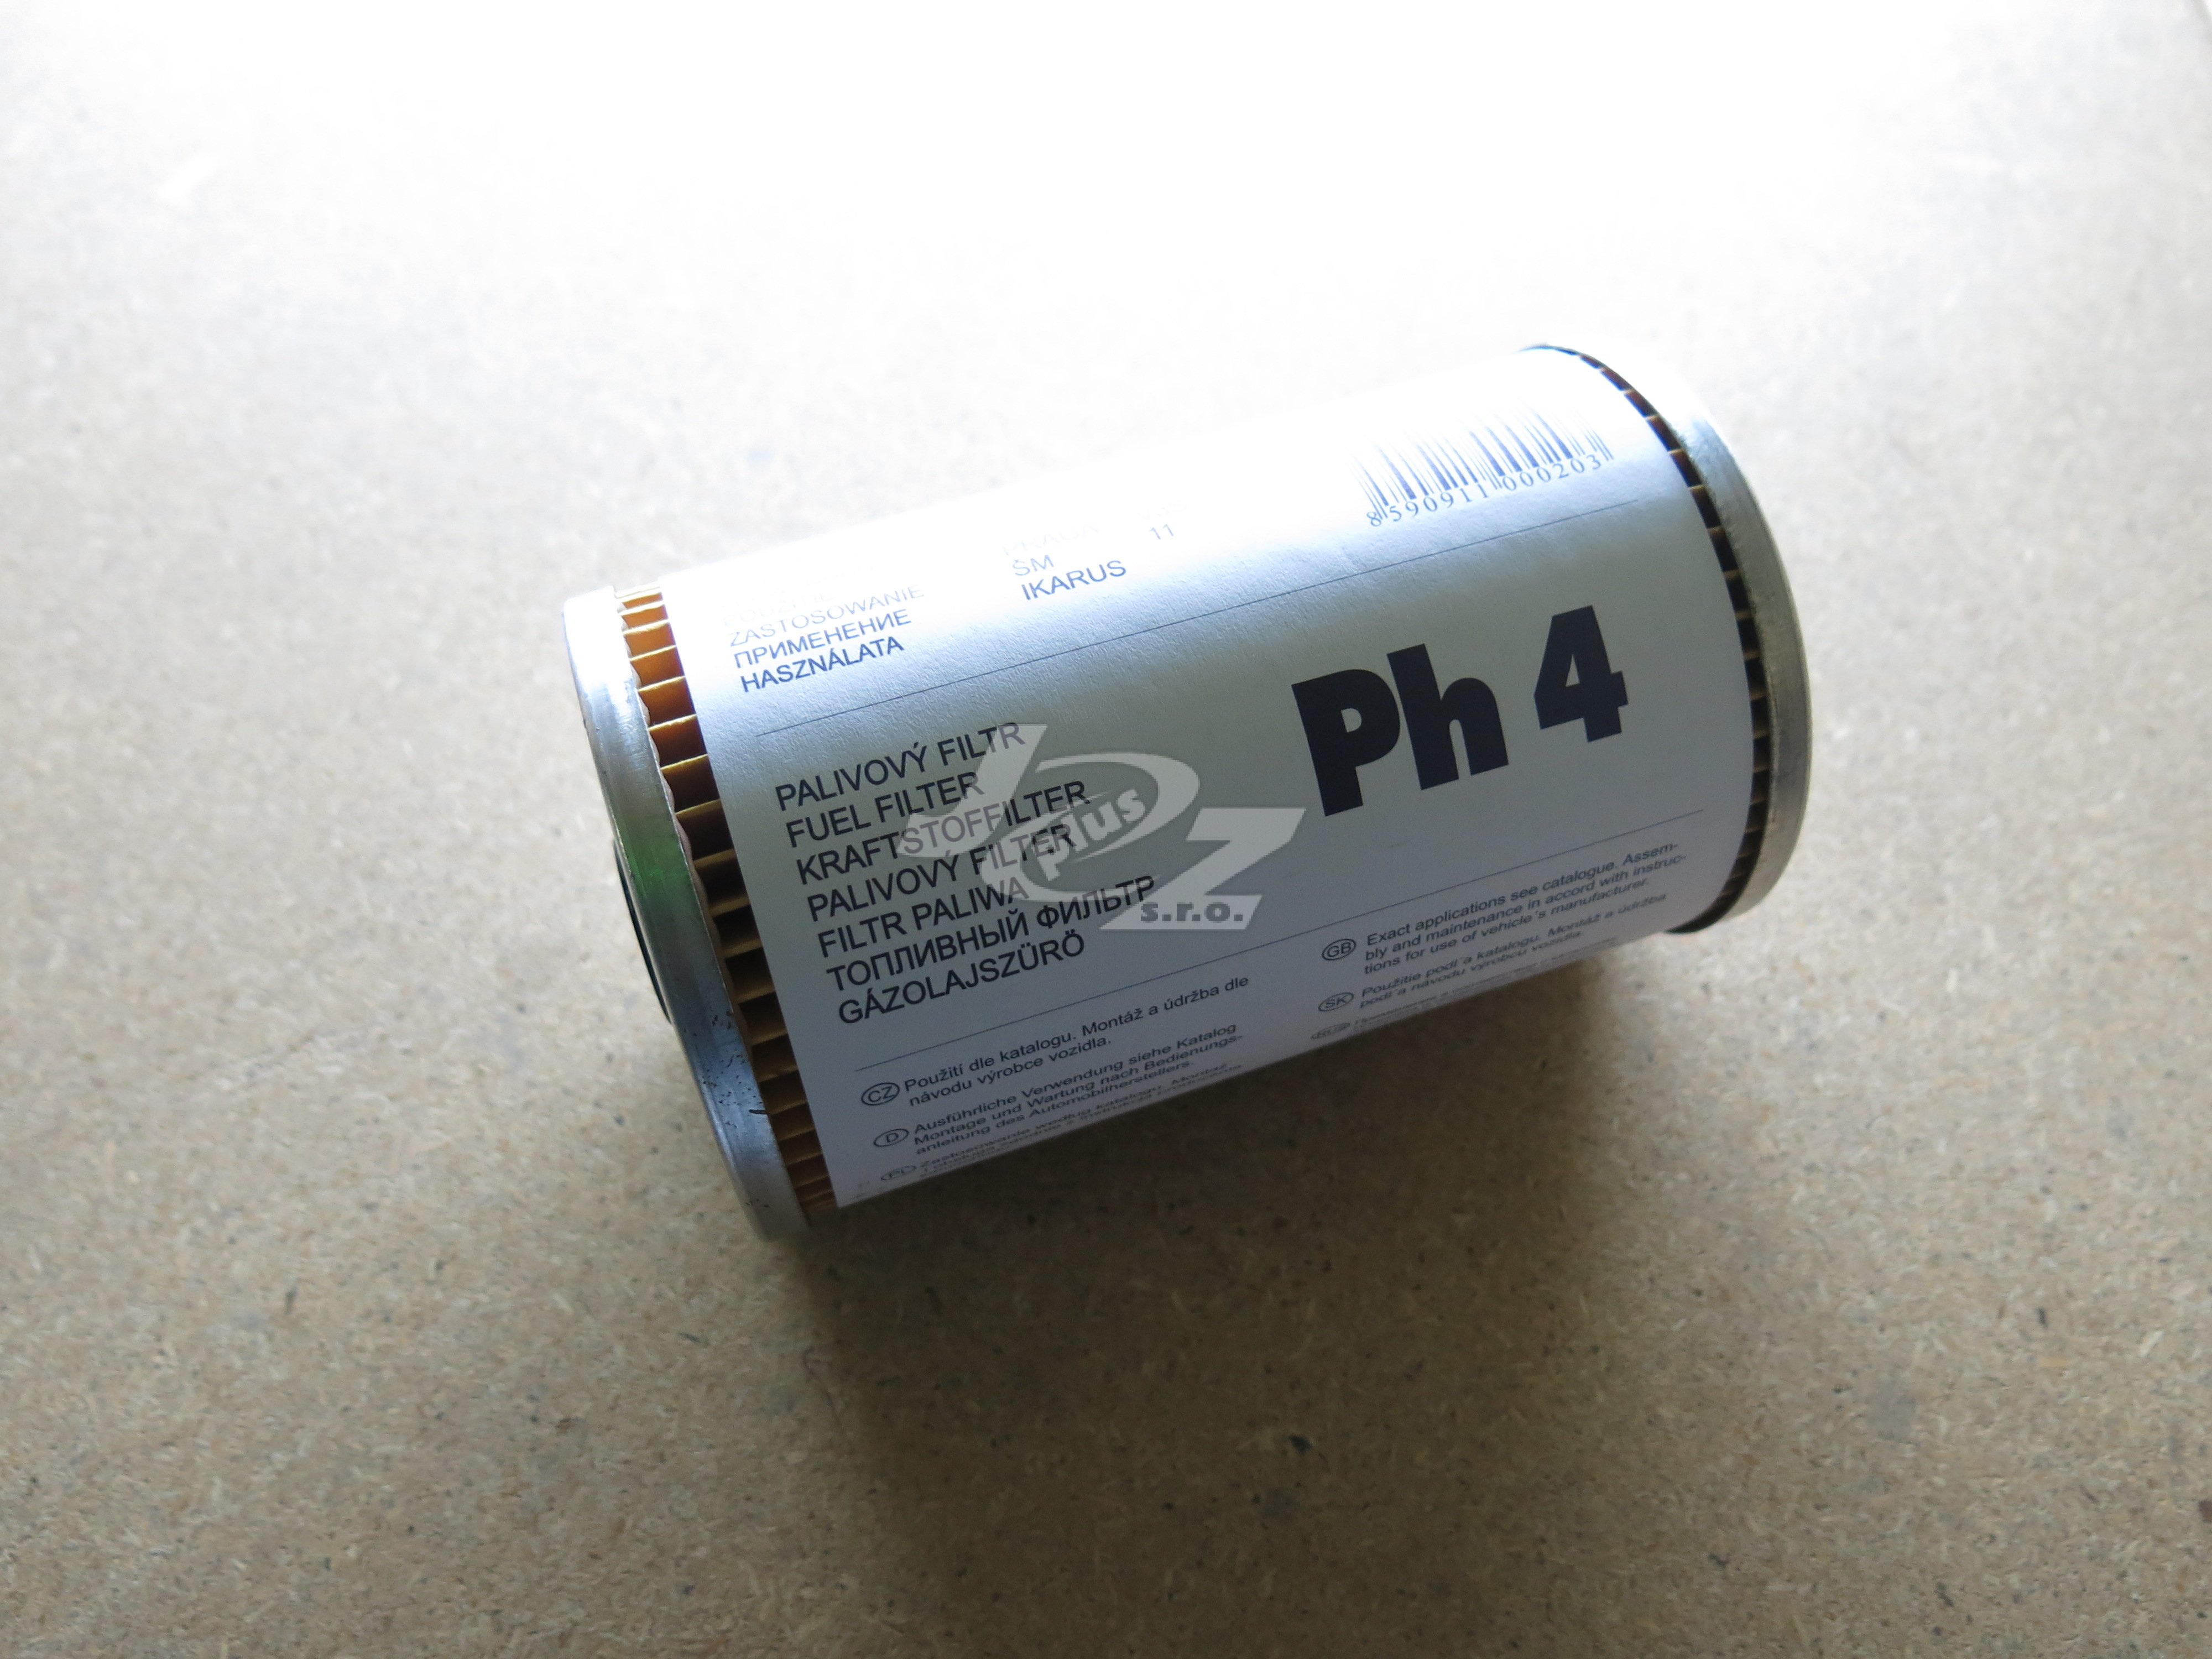 Palivový filtr Ph 4  LIAZ,KAROSA,TATRA 815